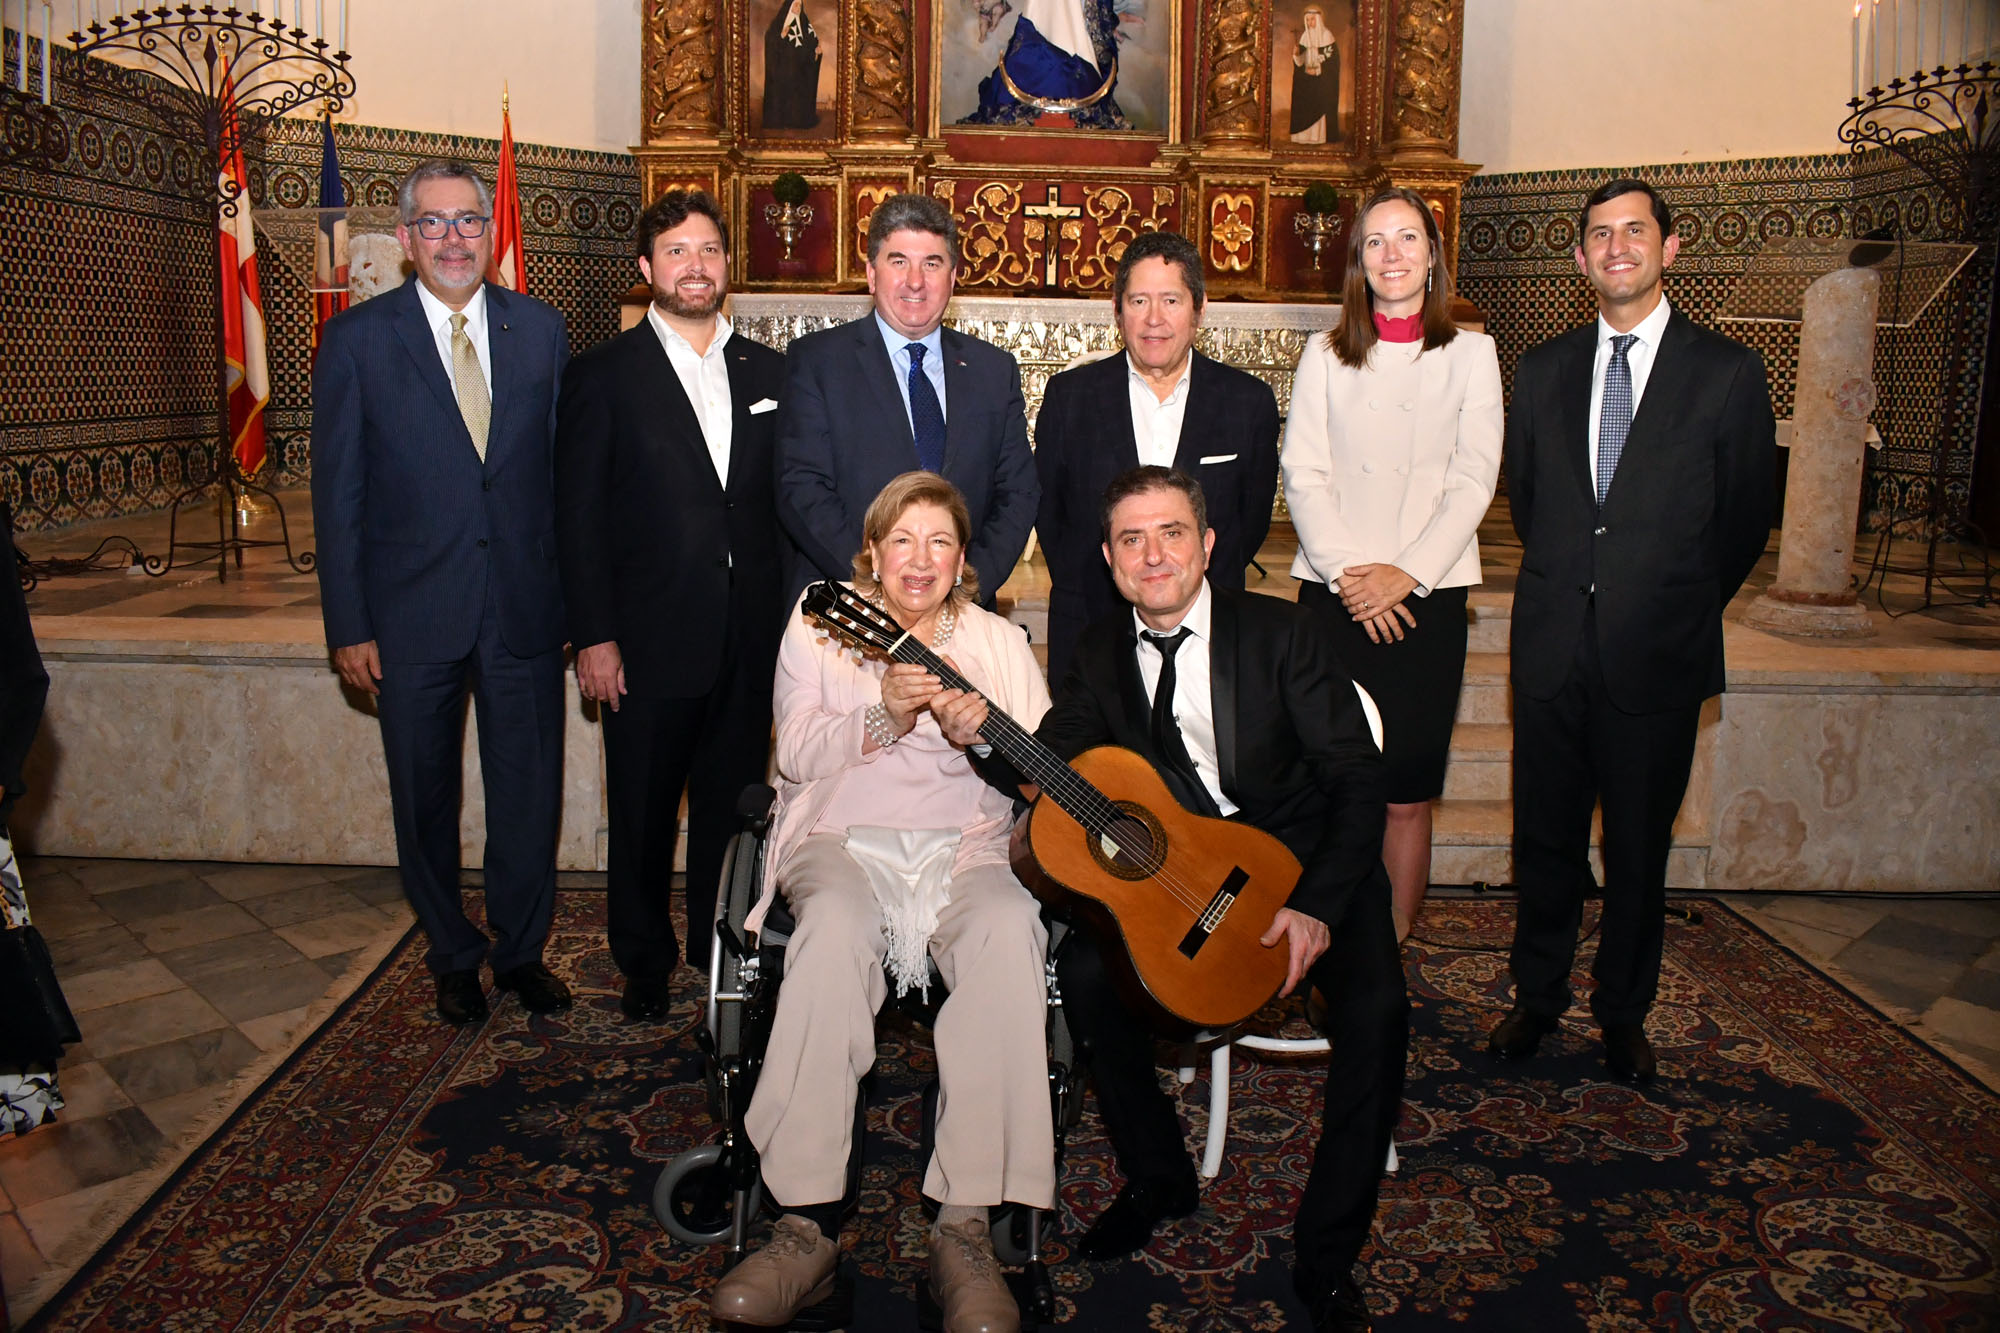  Países Mancomunidad celebran aniversario Cámara​ ​ Británica con recital guitarrista de Malta